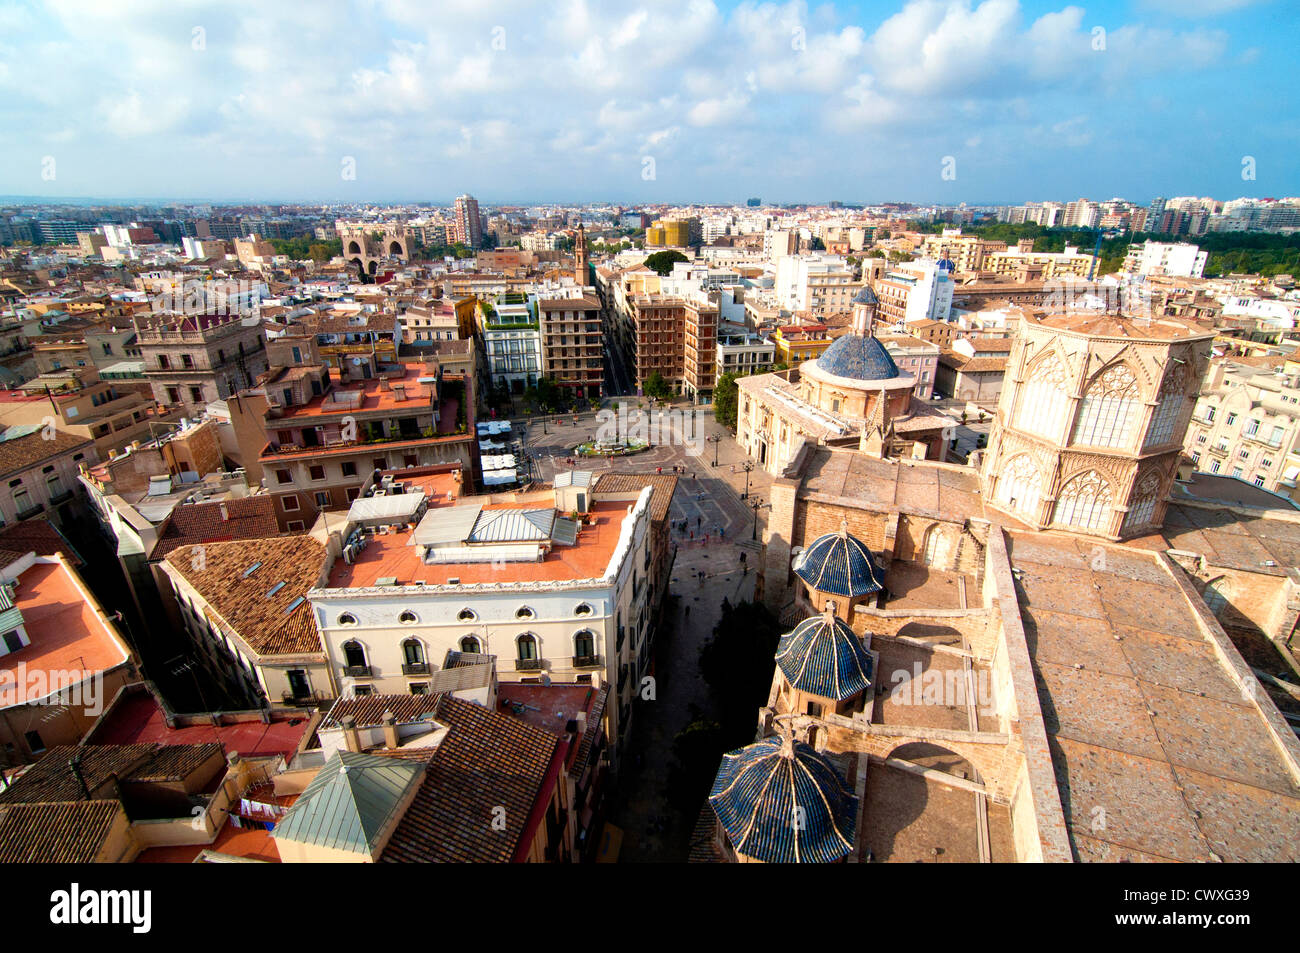 Vista de la Plaza de la Virgen tomada desde el Miguelete, Valencia, España Foto de stock